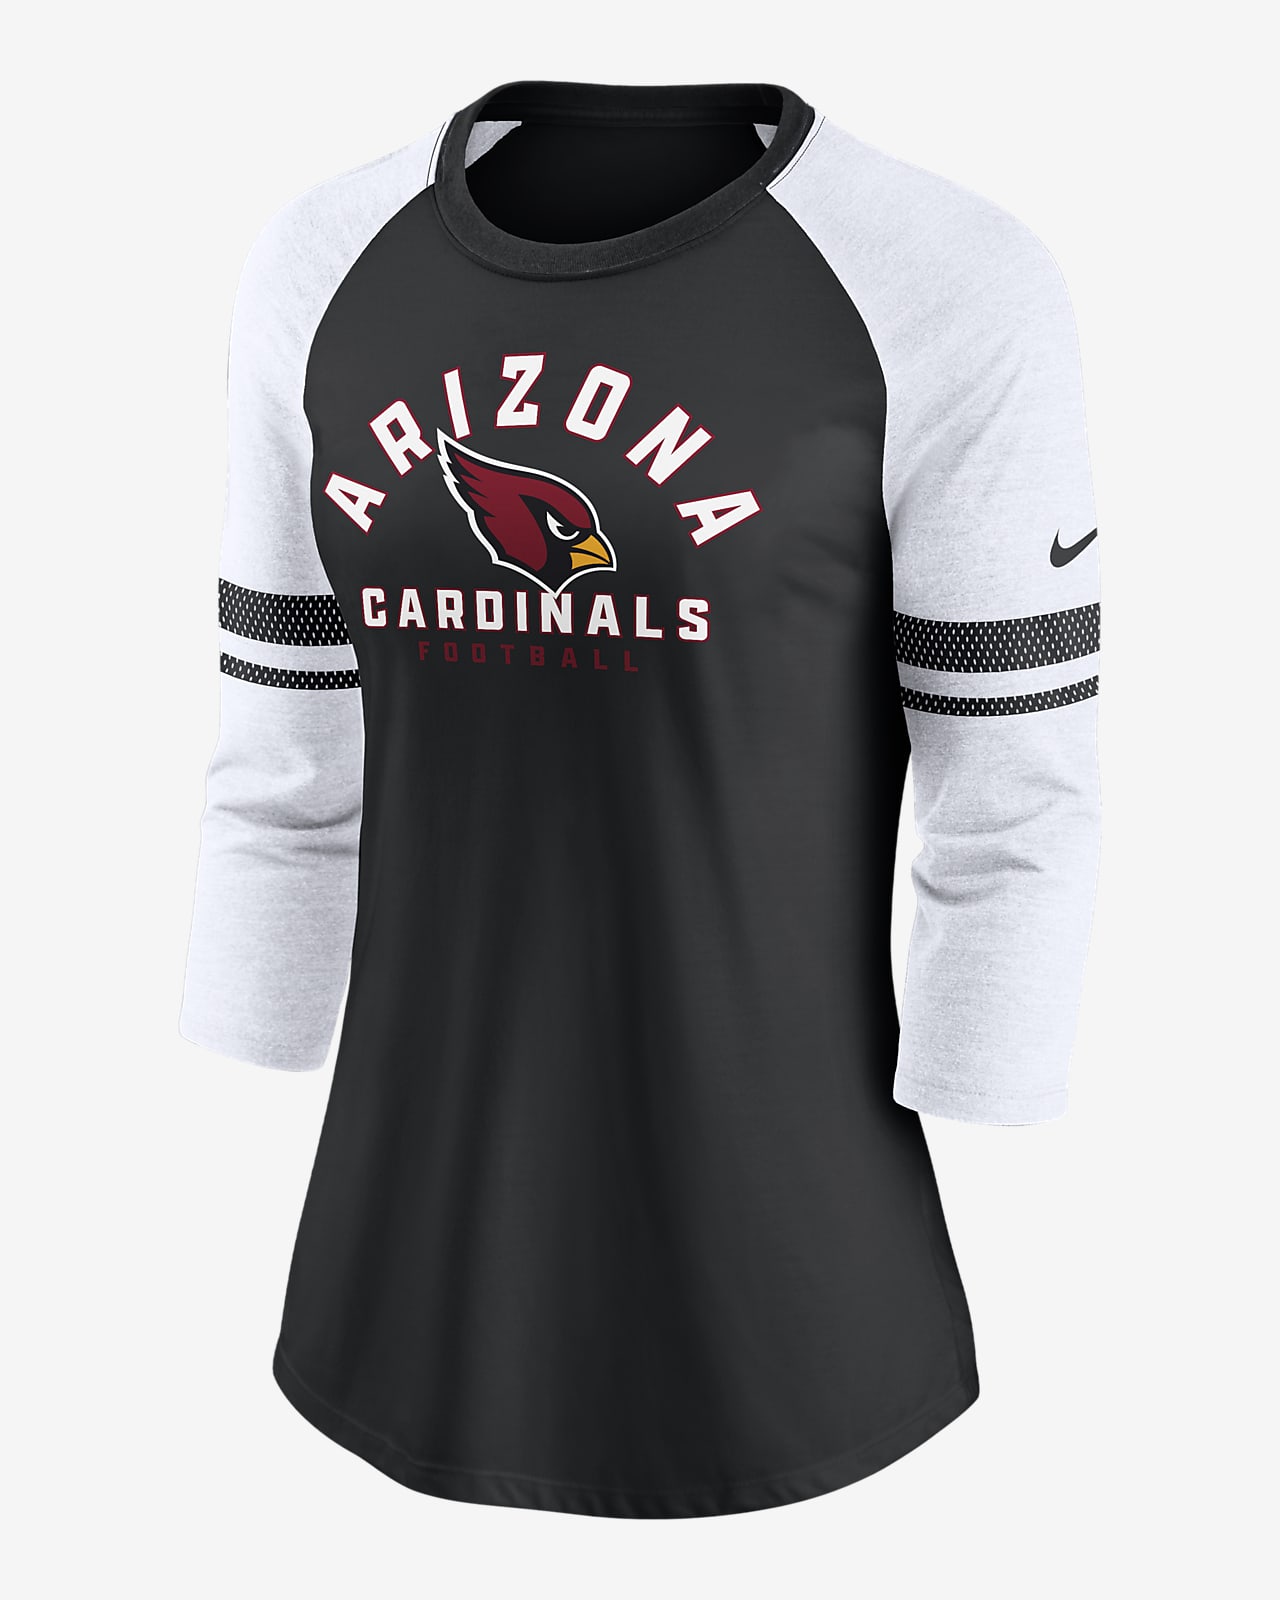 az cardinals shirt women's